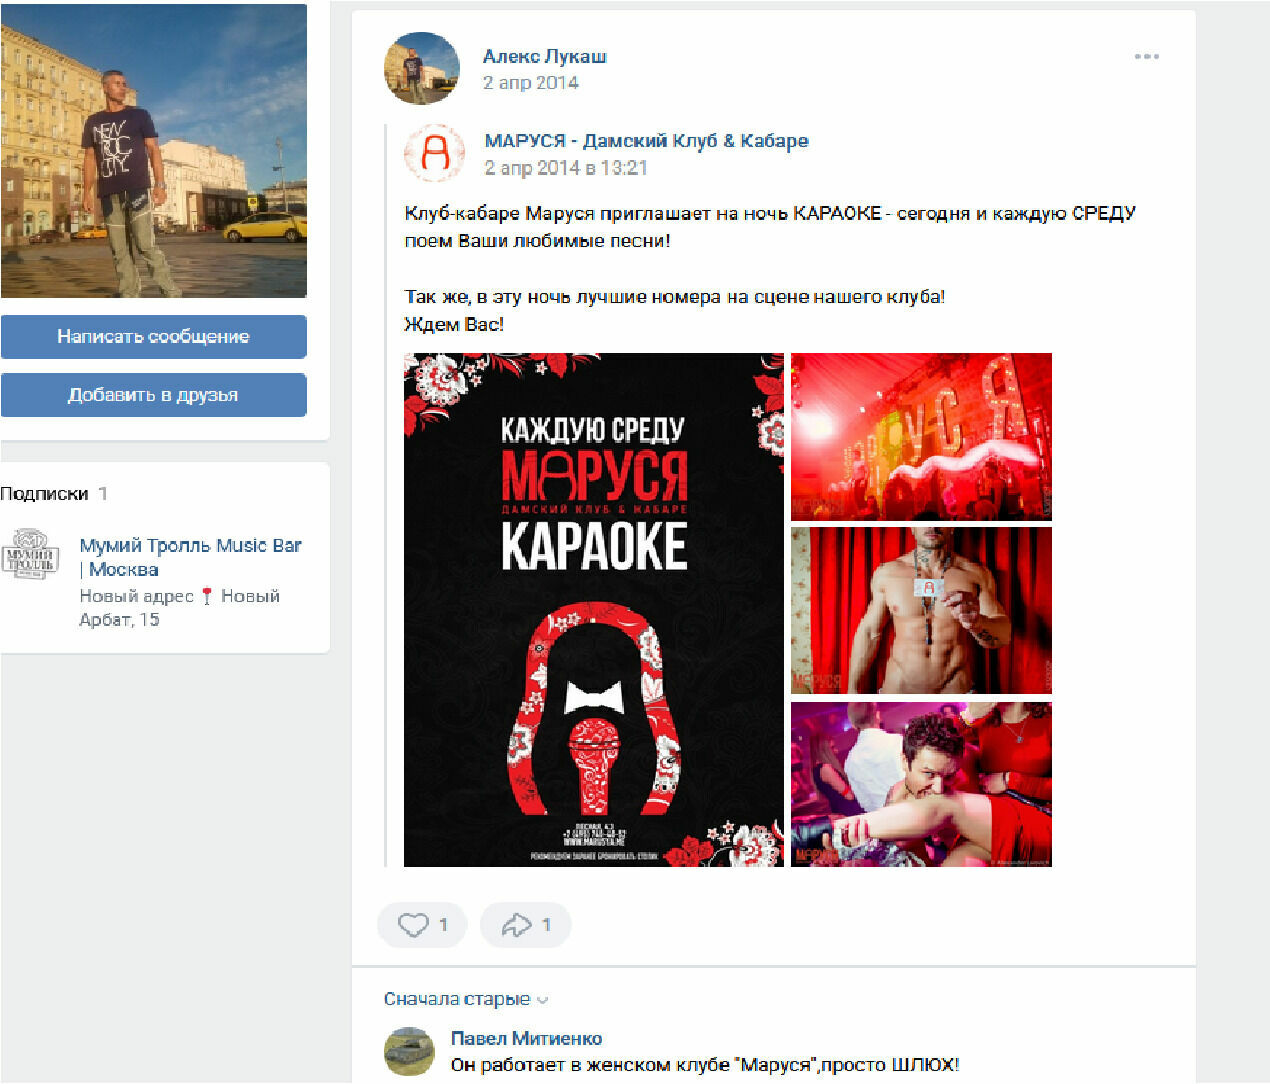 Клуб "Маруся" не существует уже несколько лет, странички в ВК Алекса Лукаша и клуба заброшены, но комментарии "благодарных" людей появляются по сей день.